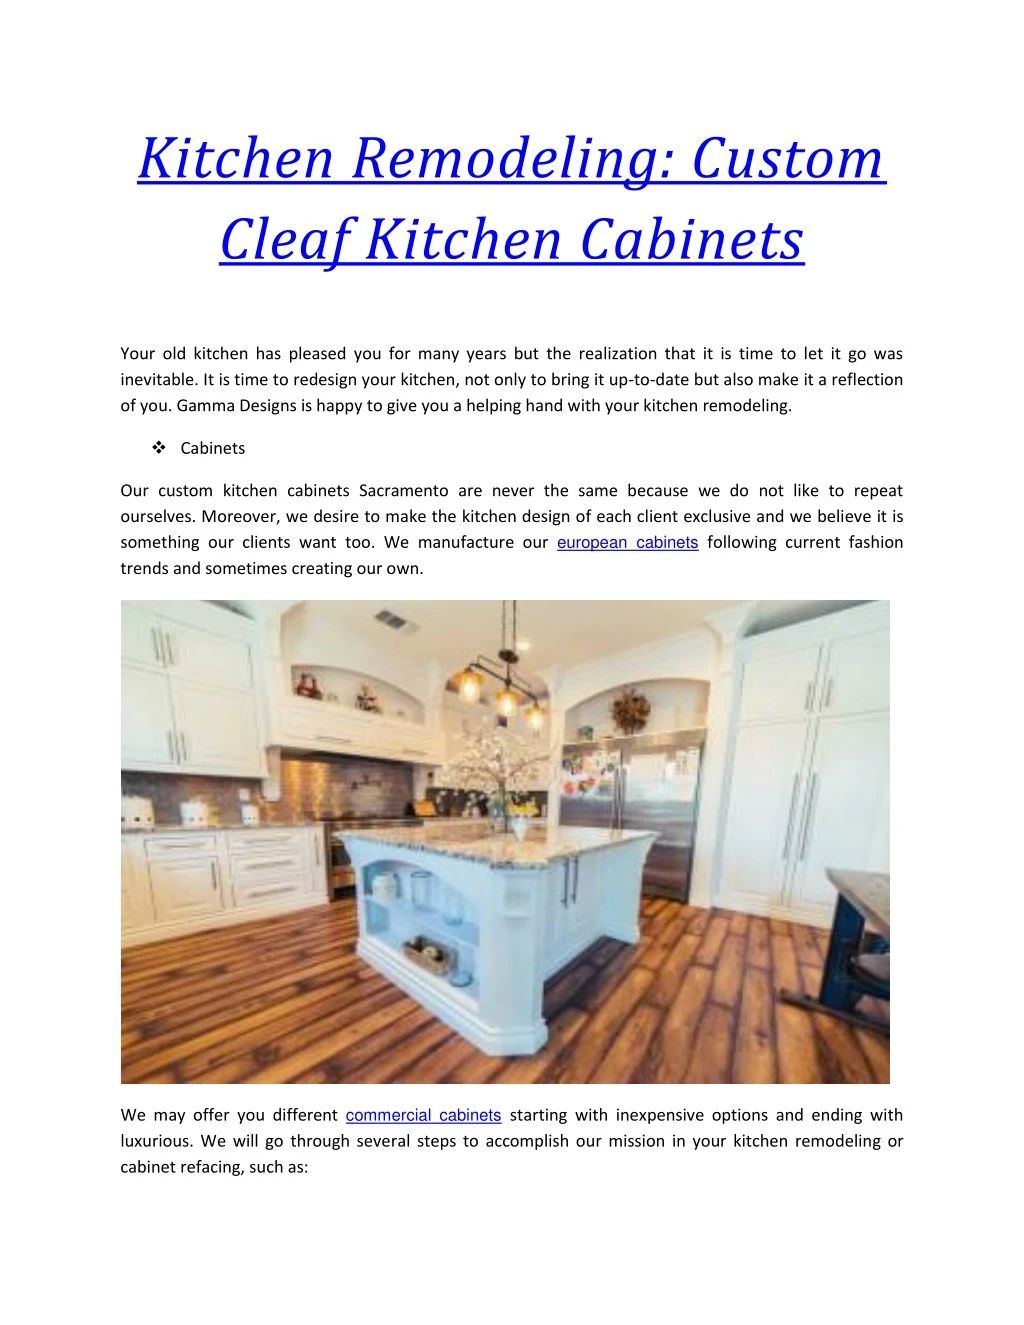 kitchen remodeling custom cleaf kitchen cabinets